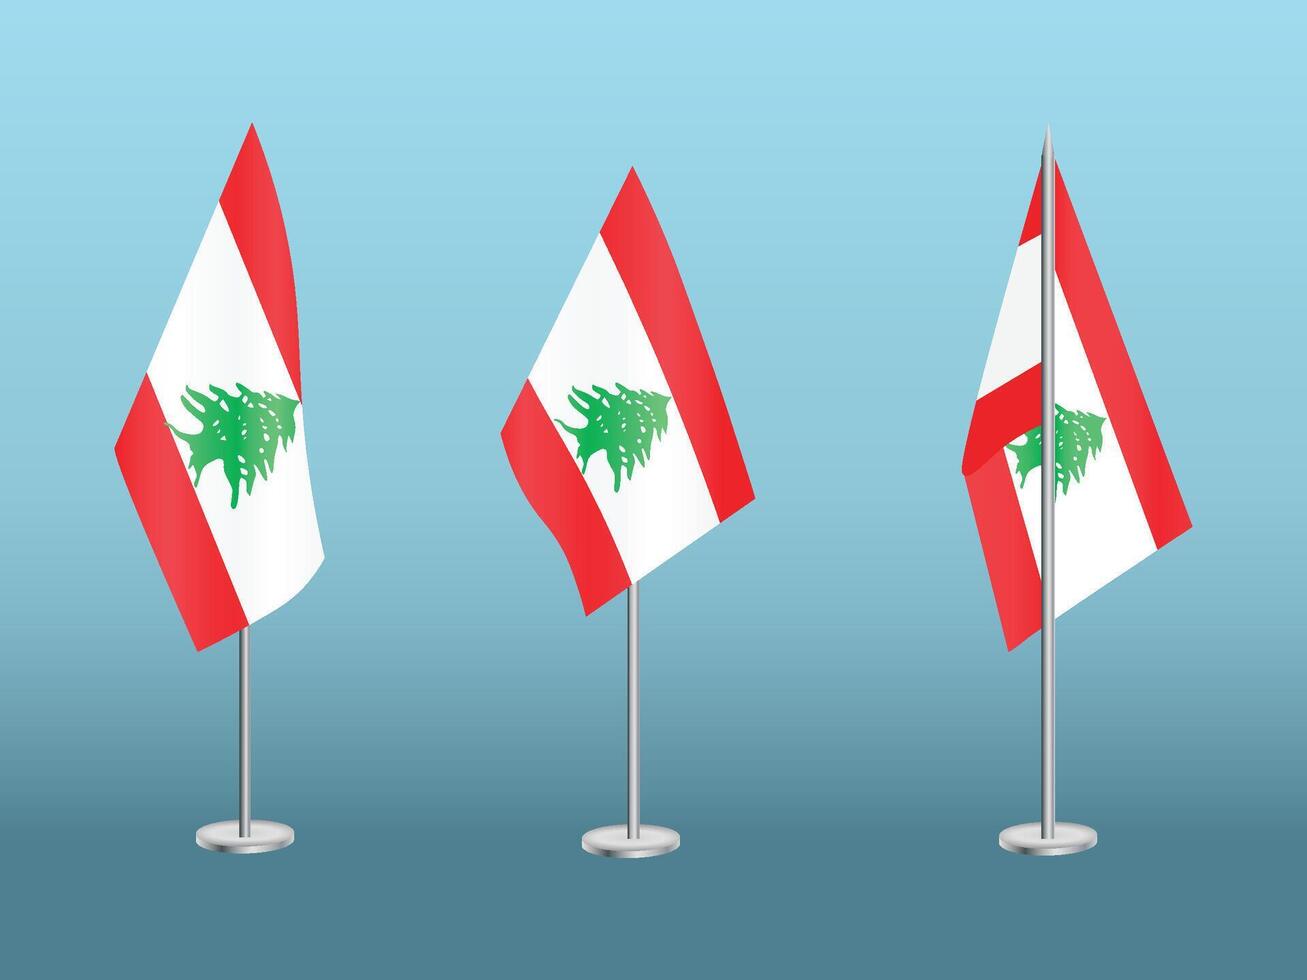 Flagge von Libanon mit Silber Stangensatz von Libanons National Flagge vektor